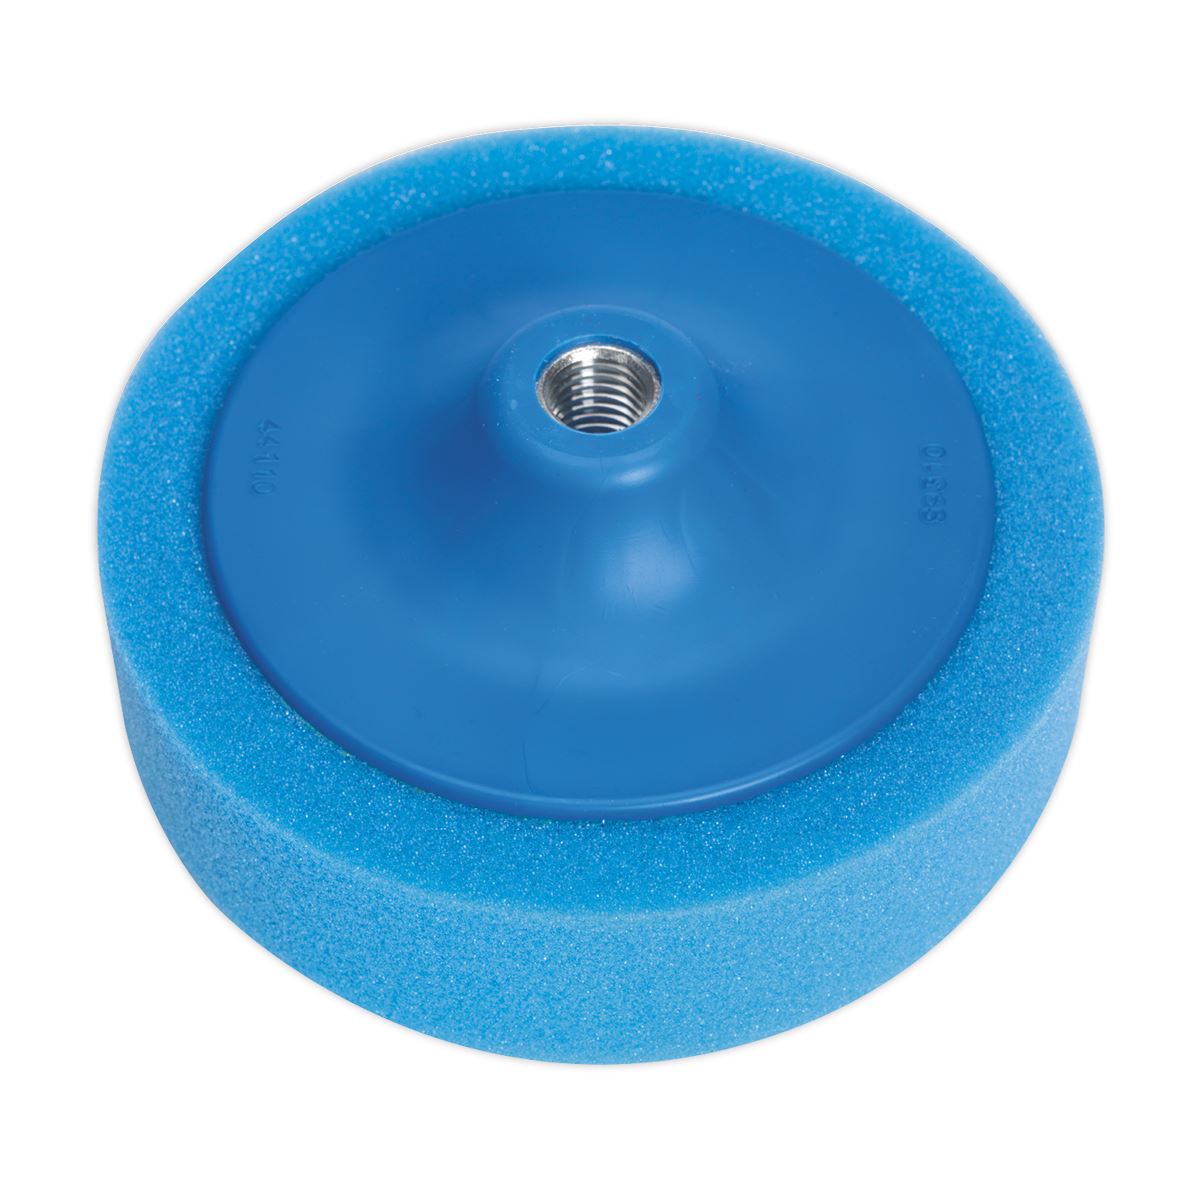 Sealey Buffing & Polishing Foam Head Ø150 x 50mm 5/8"UNC Blue/Medium